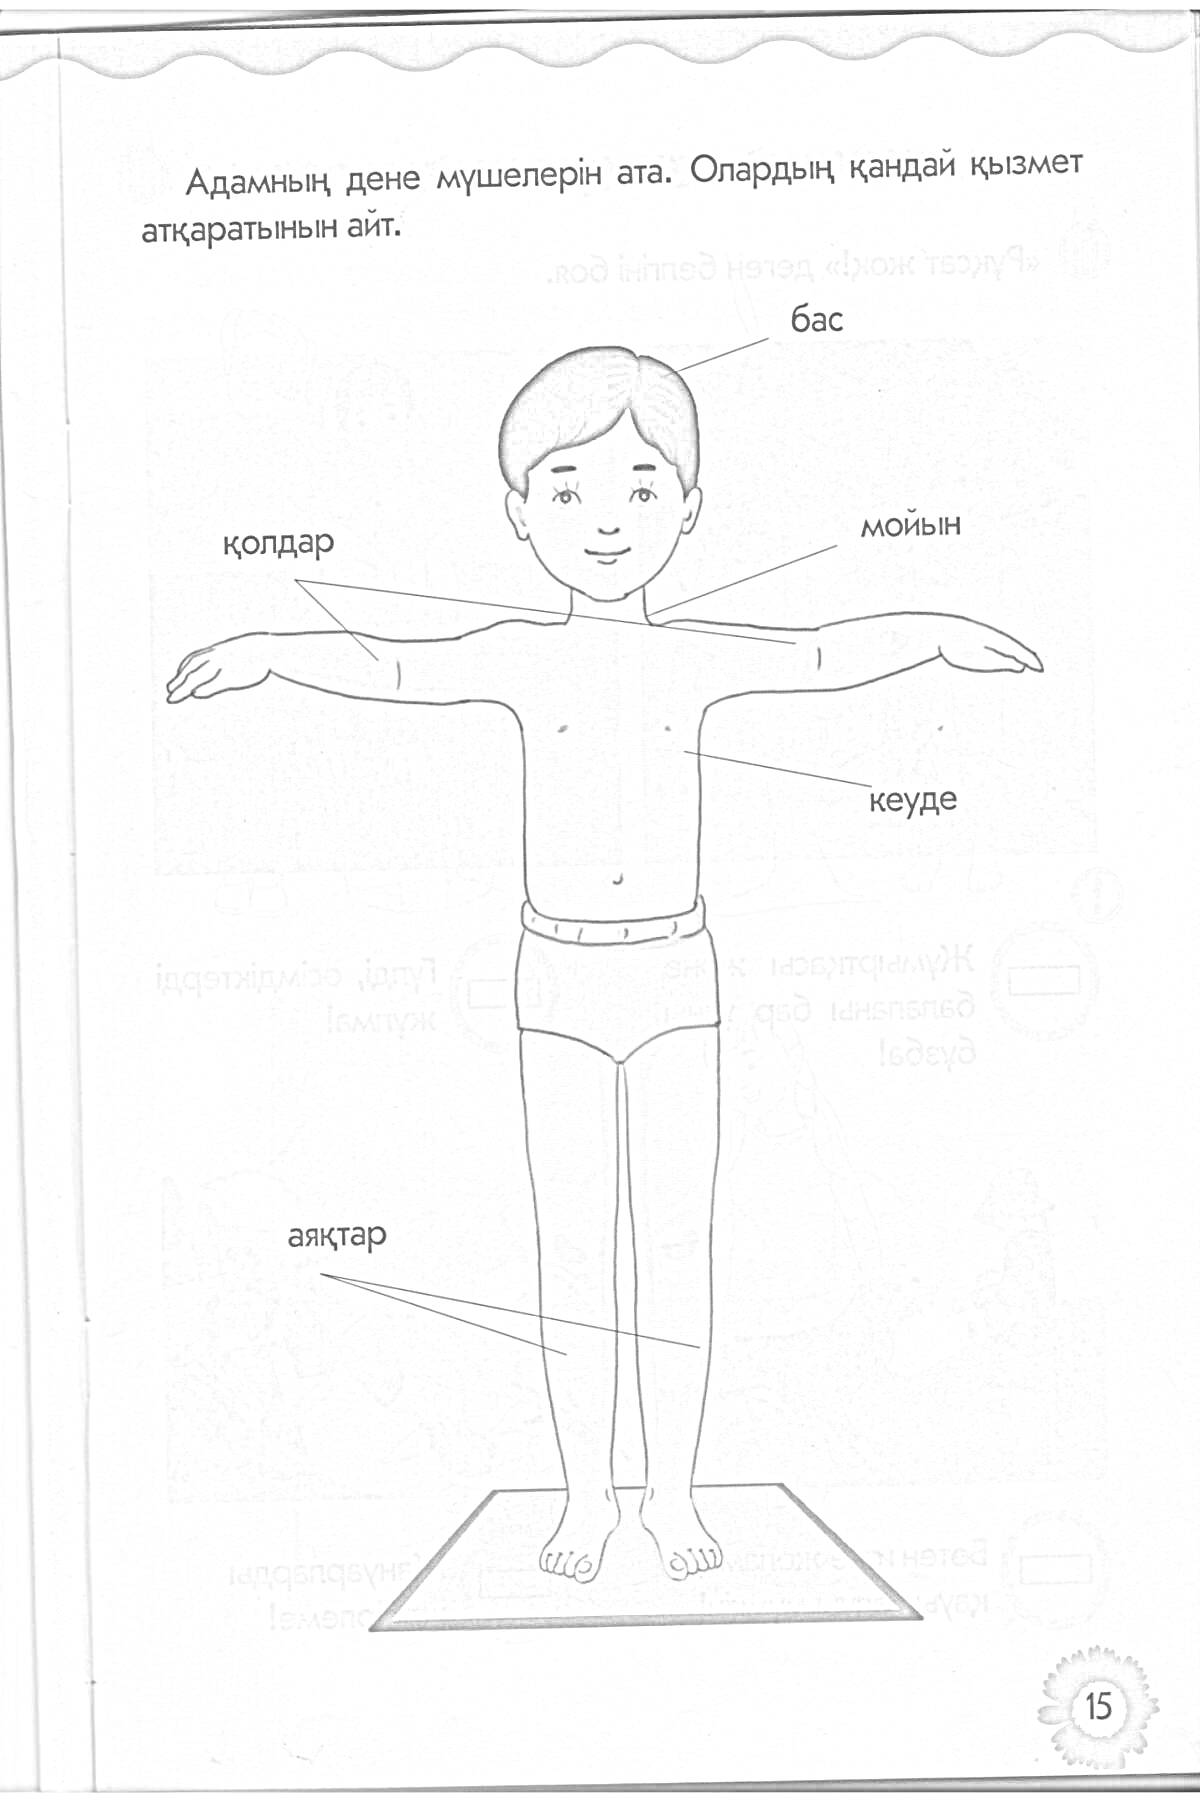 Раскраска Ребенок с указанием частей тела (бас, мойын, қолдар, кеуде, аяқтар)